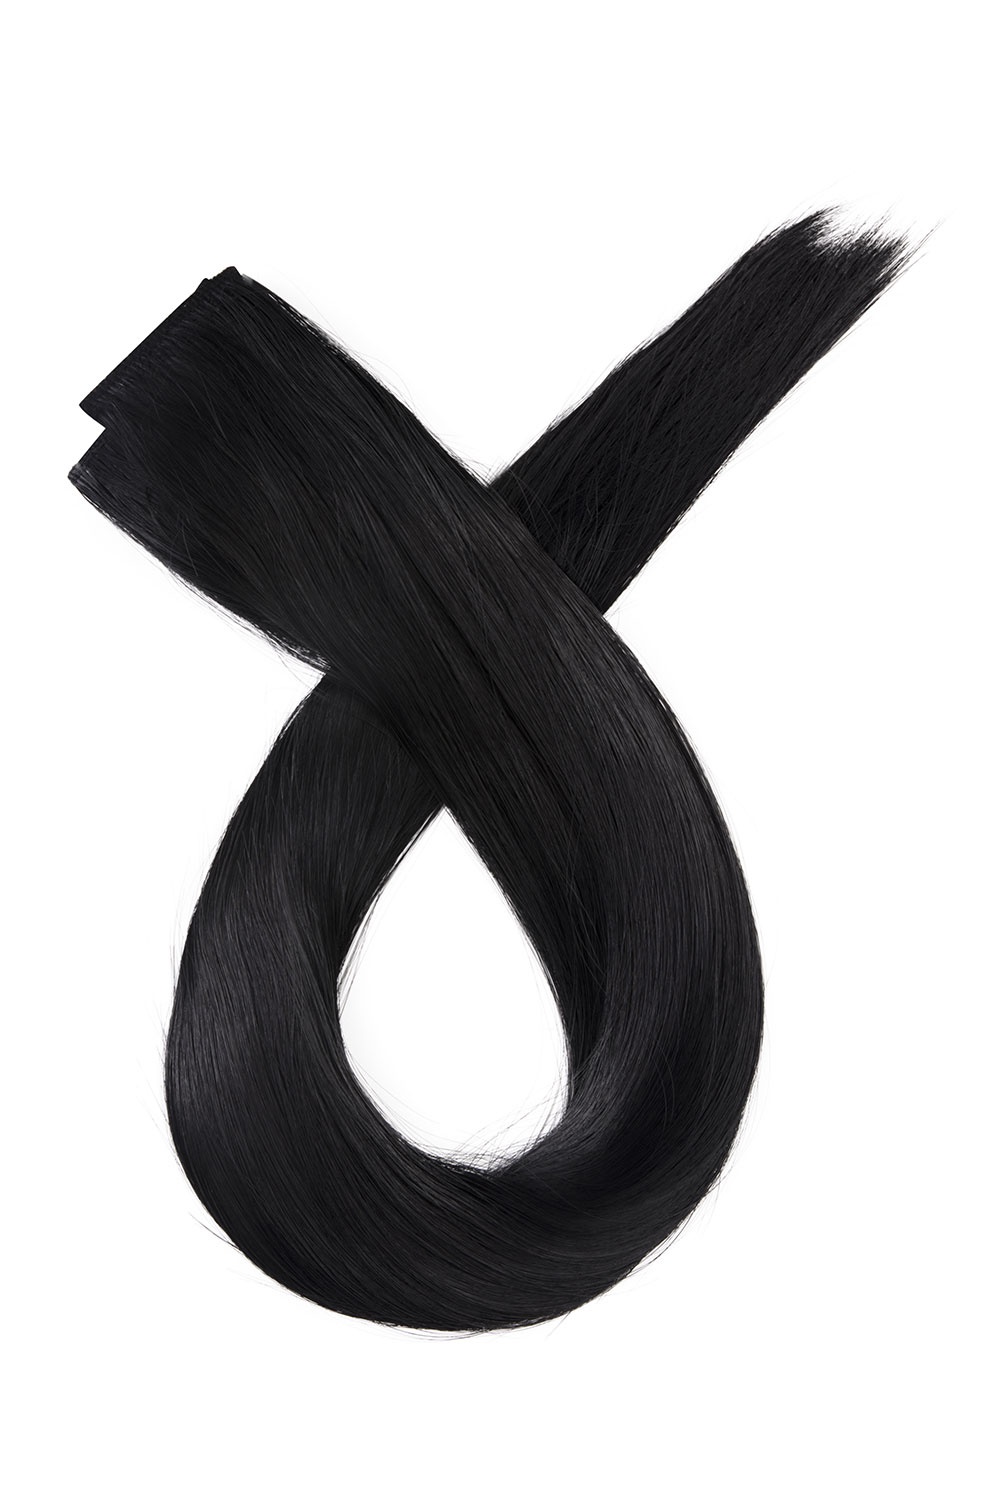 Čierne jednopásové vlasy, rovné, 60cm, 115g, farba 1